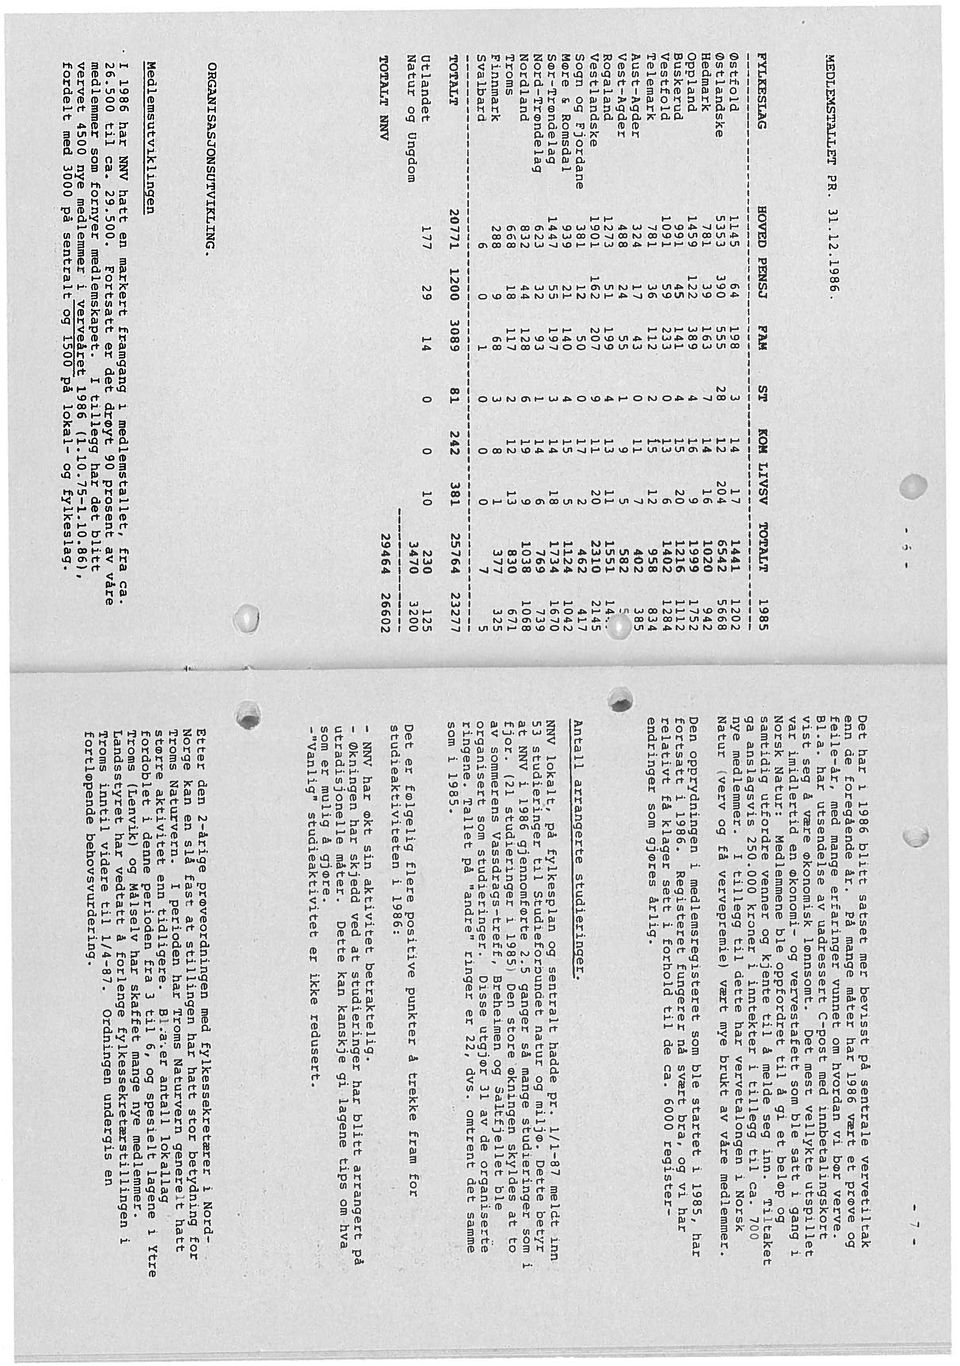 P mange måter har 1986 vært et prøve S1.a. har utsendelse uadressert C-rost med innbetalingskort samtidig utf ordre venner kjente til å melde seg inn.